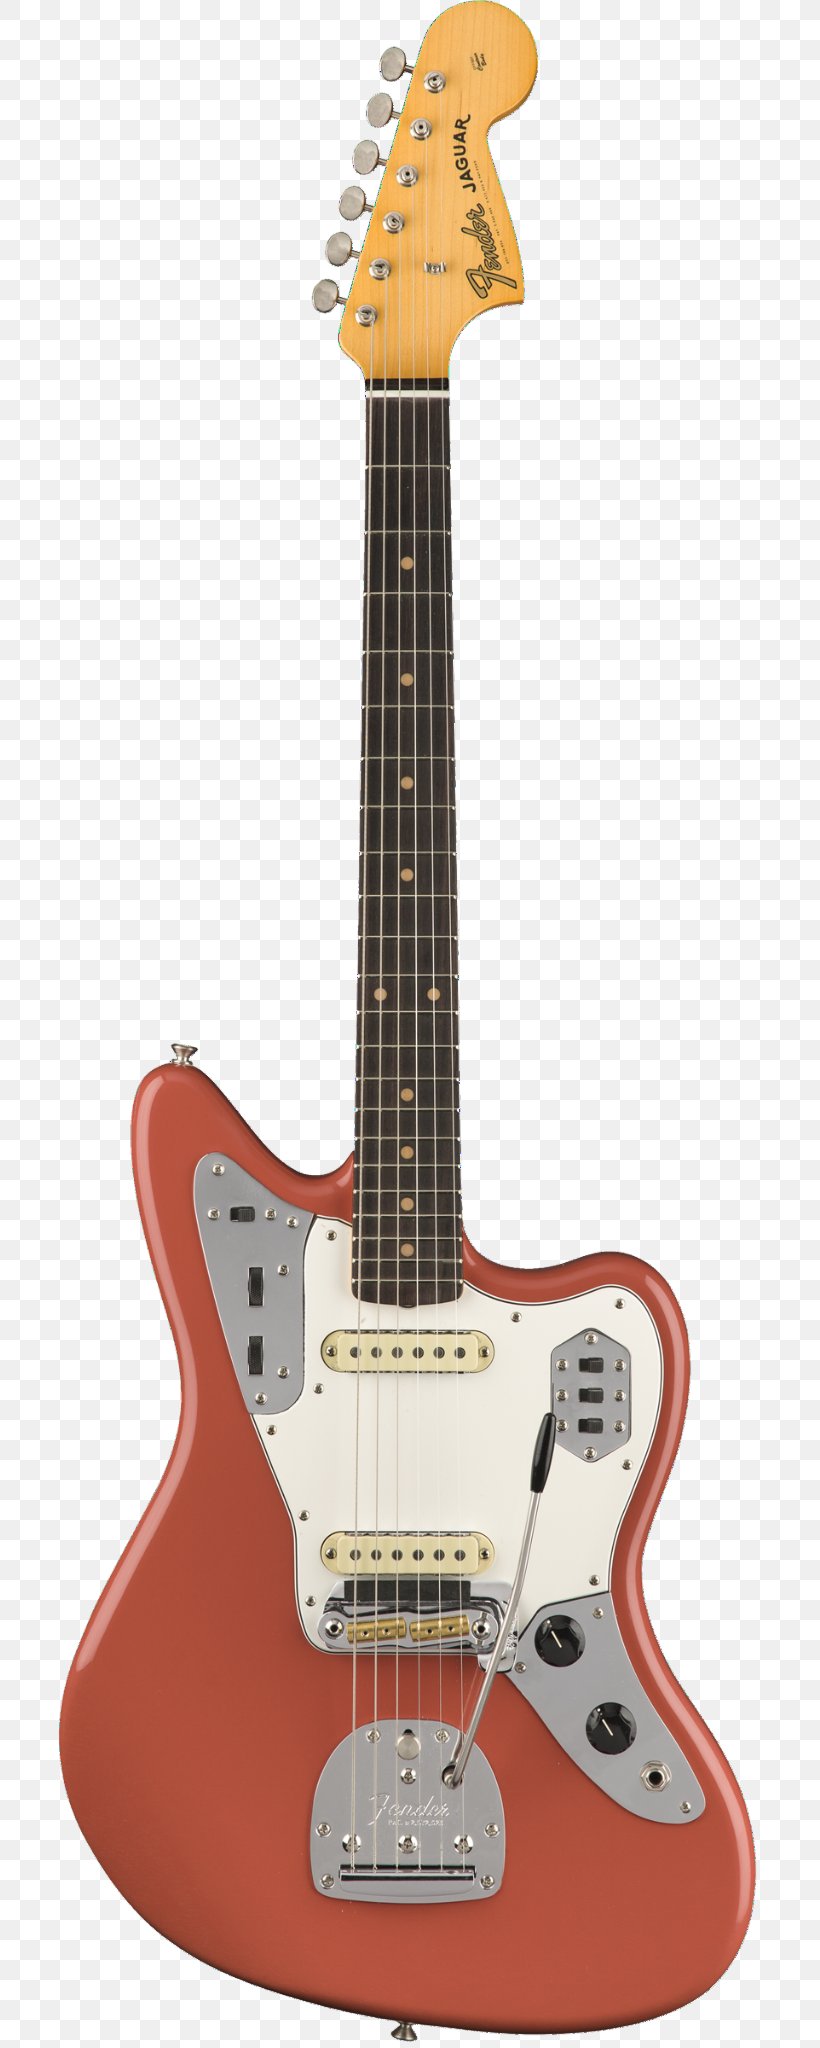 Fender Jaguar Fender Musical Instruments Corporation Fender Jazzmaster Guitar Fender Stratocaster, PNG, 704x2048px, Fender Jaguar, Acoustic Electric Guitar, Acoustic Guitar, Electric Guitar, Electronic Musical Instrument Download Free